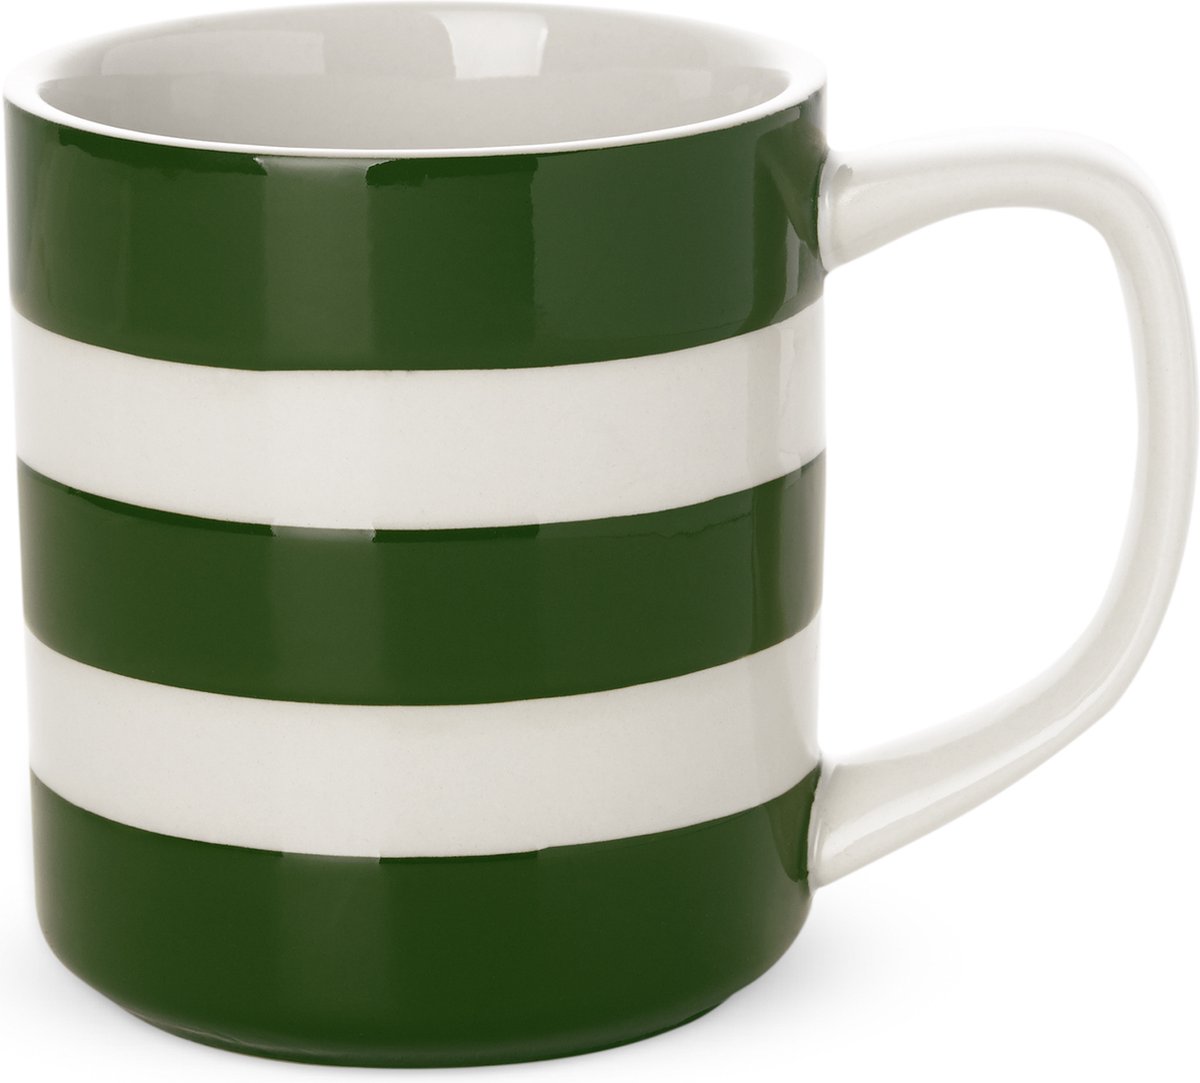 Cornishware Adder Green Mug 28cl - Mok - 280 ml - donkergroen strepen - handbeschilderd